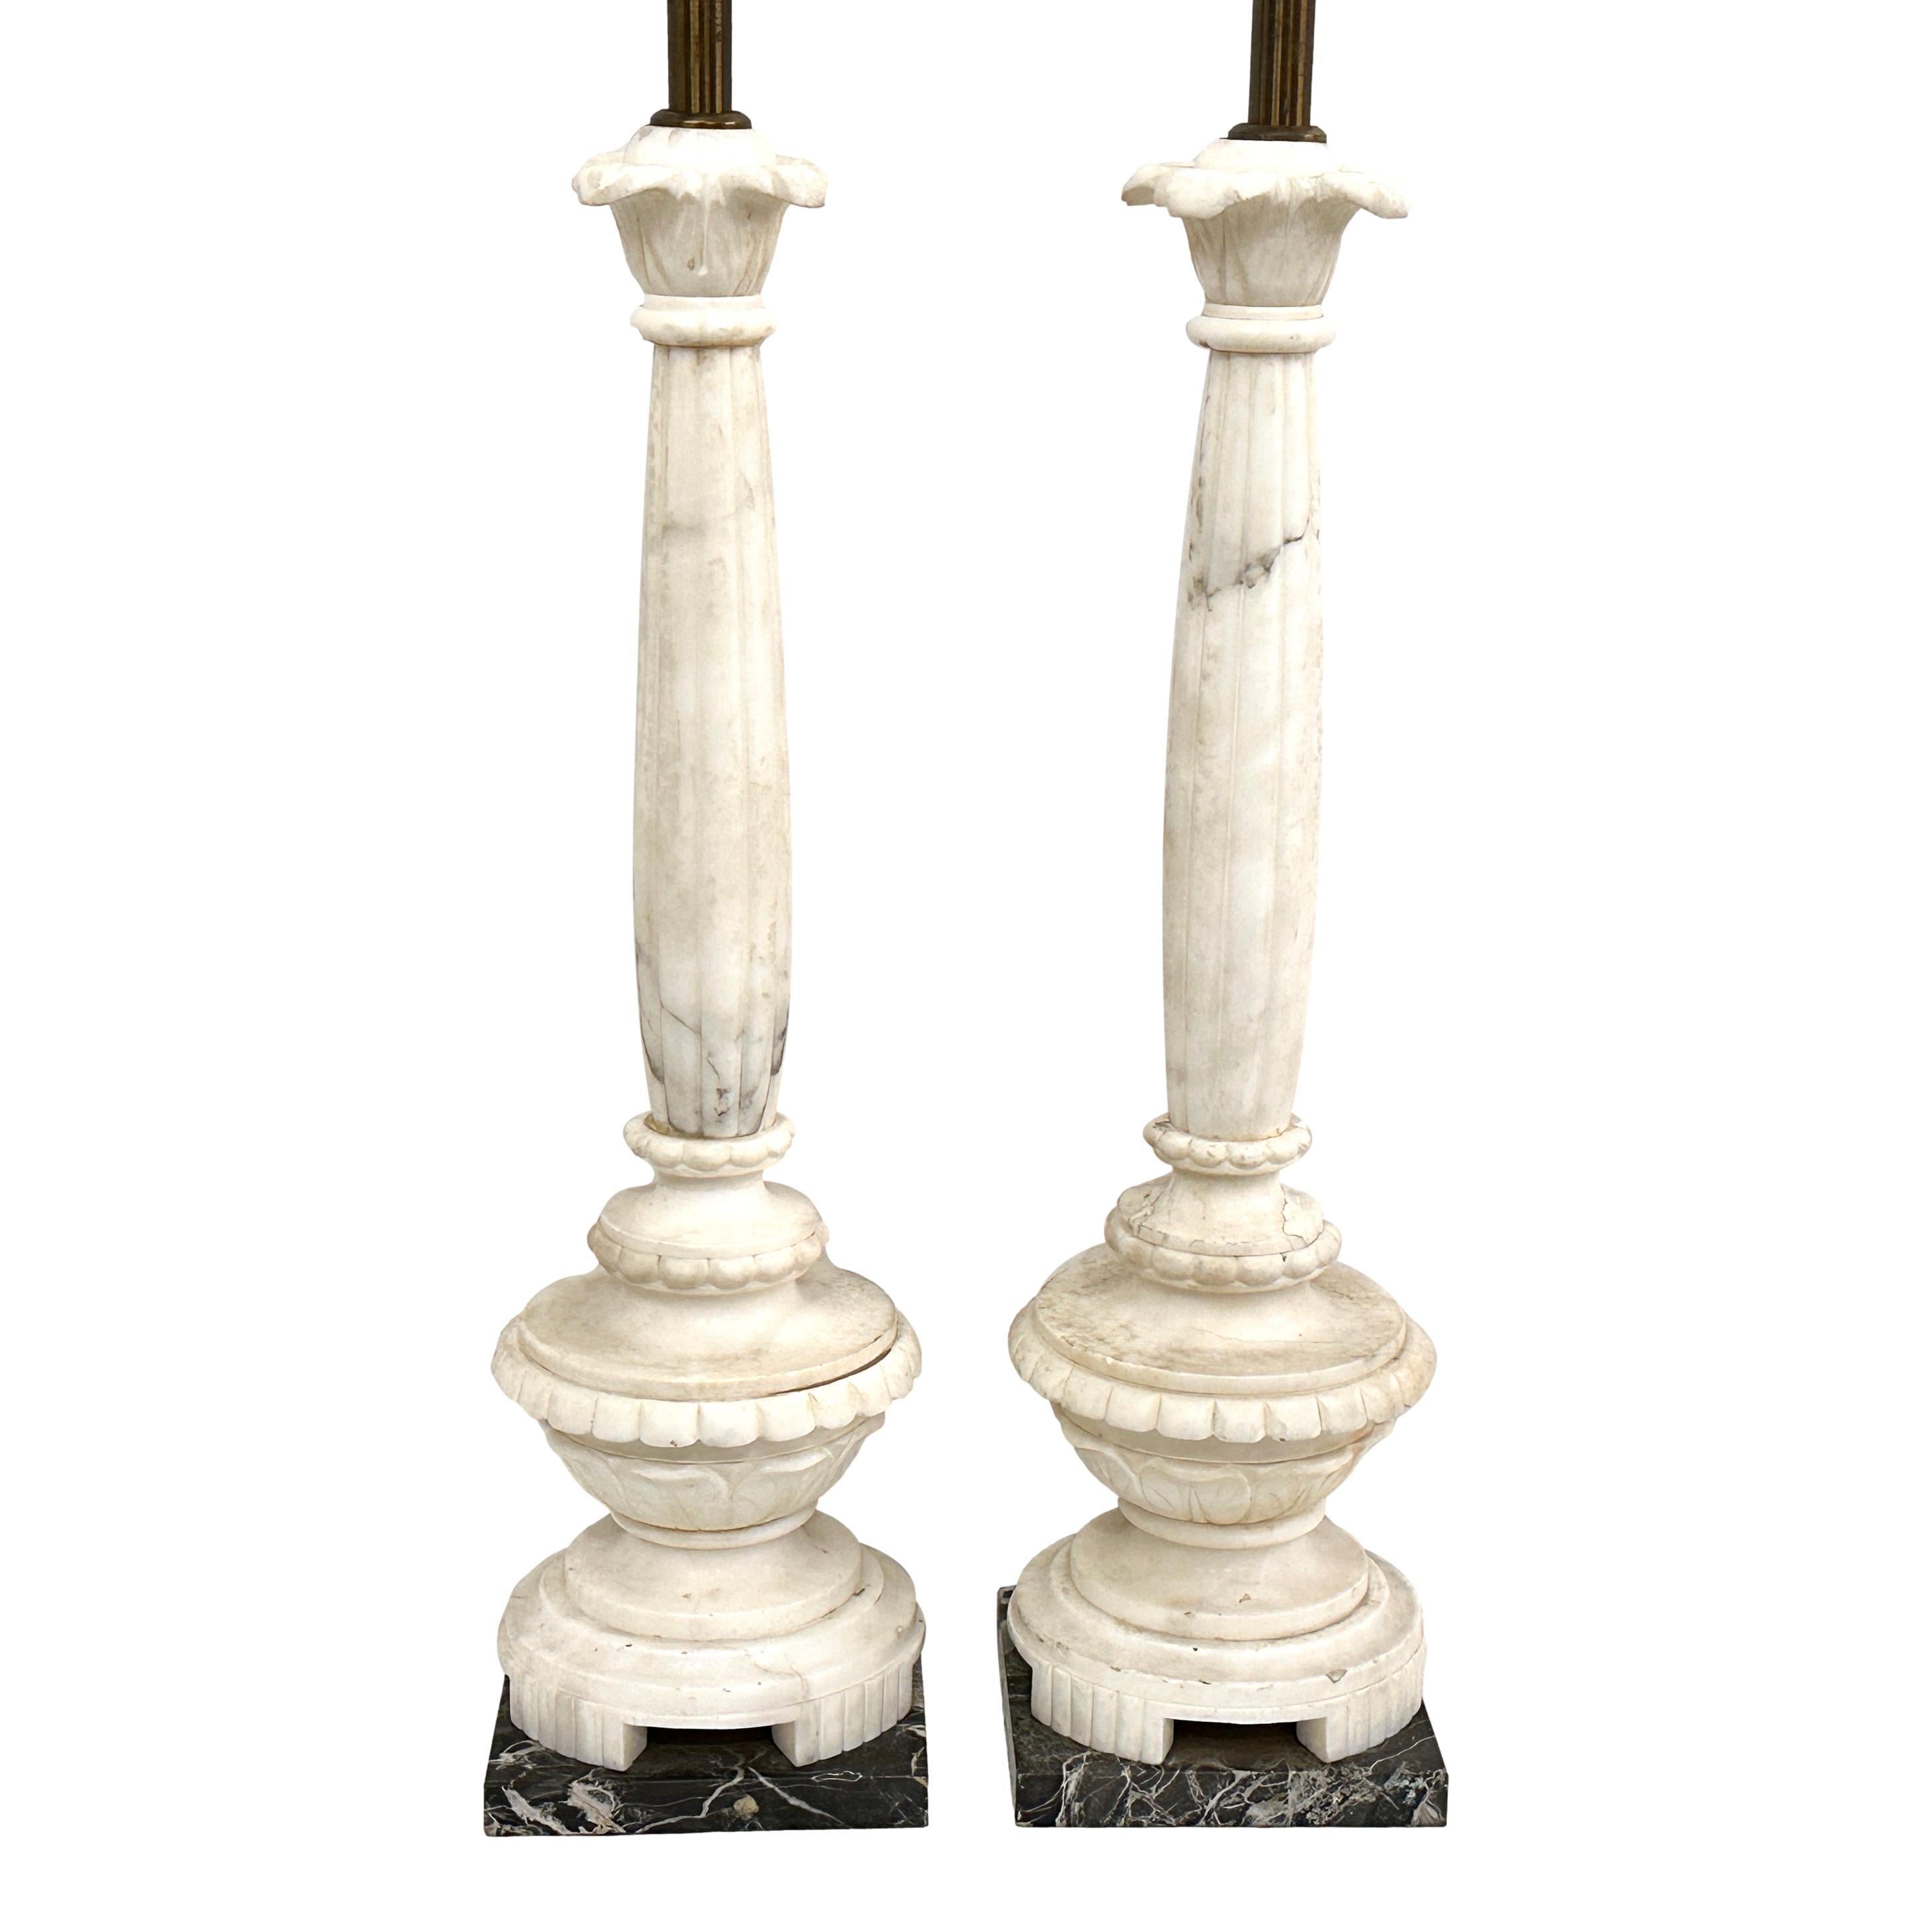 Paire de lampes italiennes en forme de colonne en albâtre avec base en marbre noir, datant des années 1930.

Mesures :
Hauteur du corps : 22